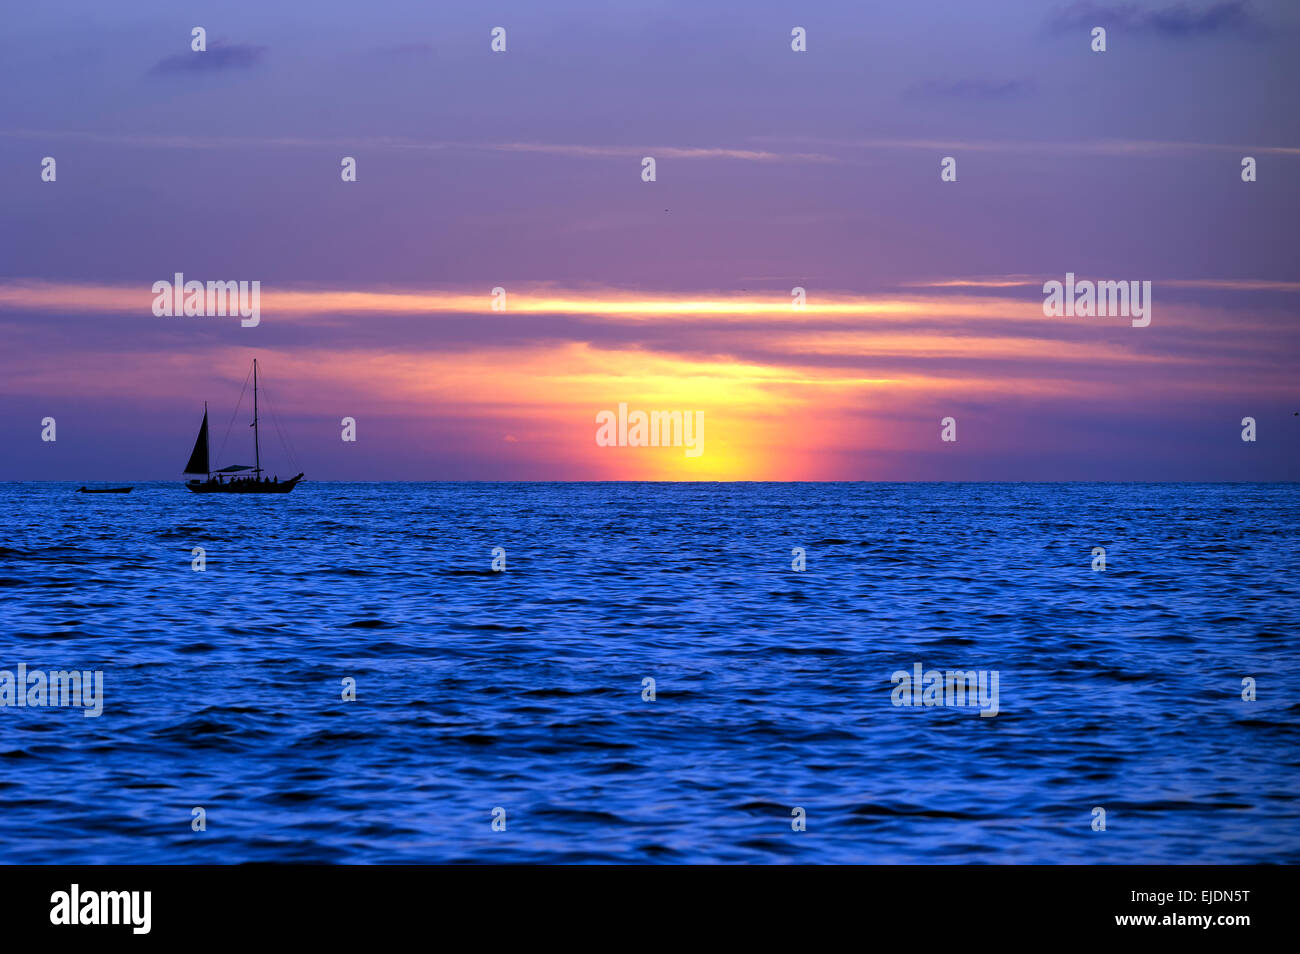 Un voilier se déplace le long de l'eau tandis que le soleil se couche à l'arrière-plan. Banque D'Images